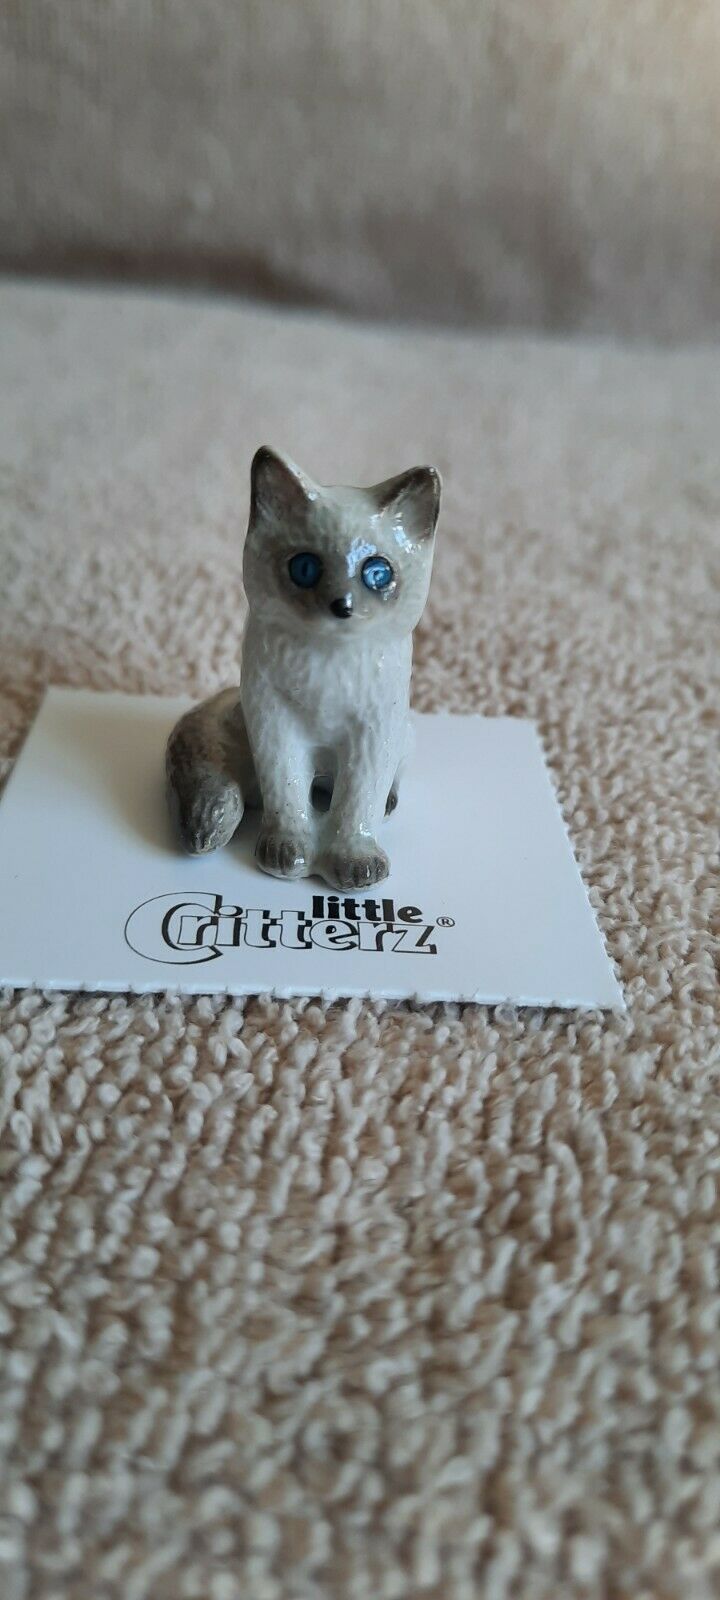 Little Critterz Cat Ragdoll Kitten "samantha" Miniature Figurine New Lc902